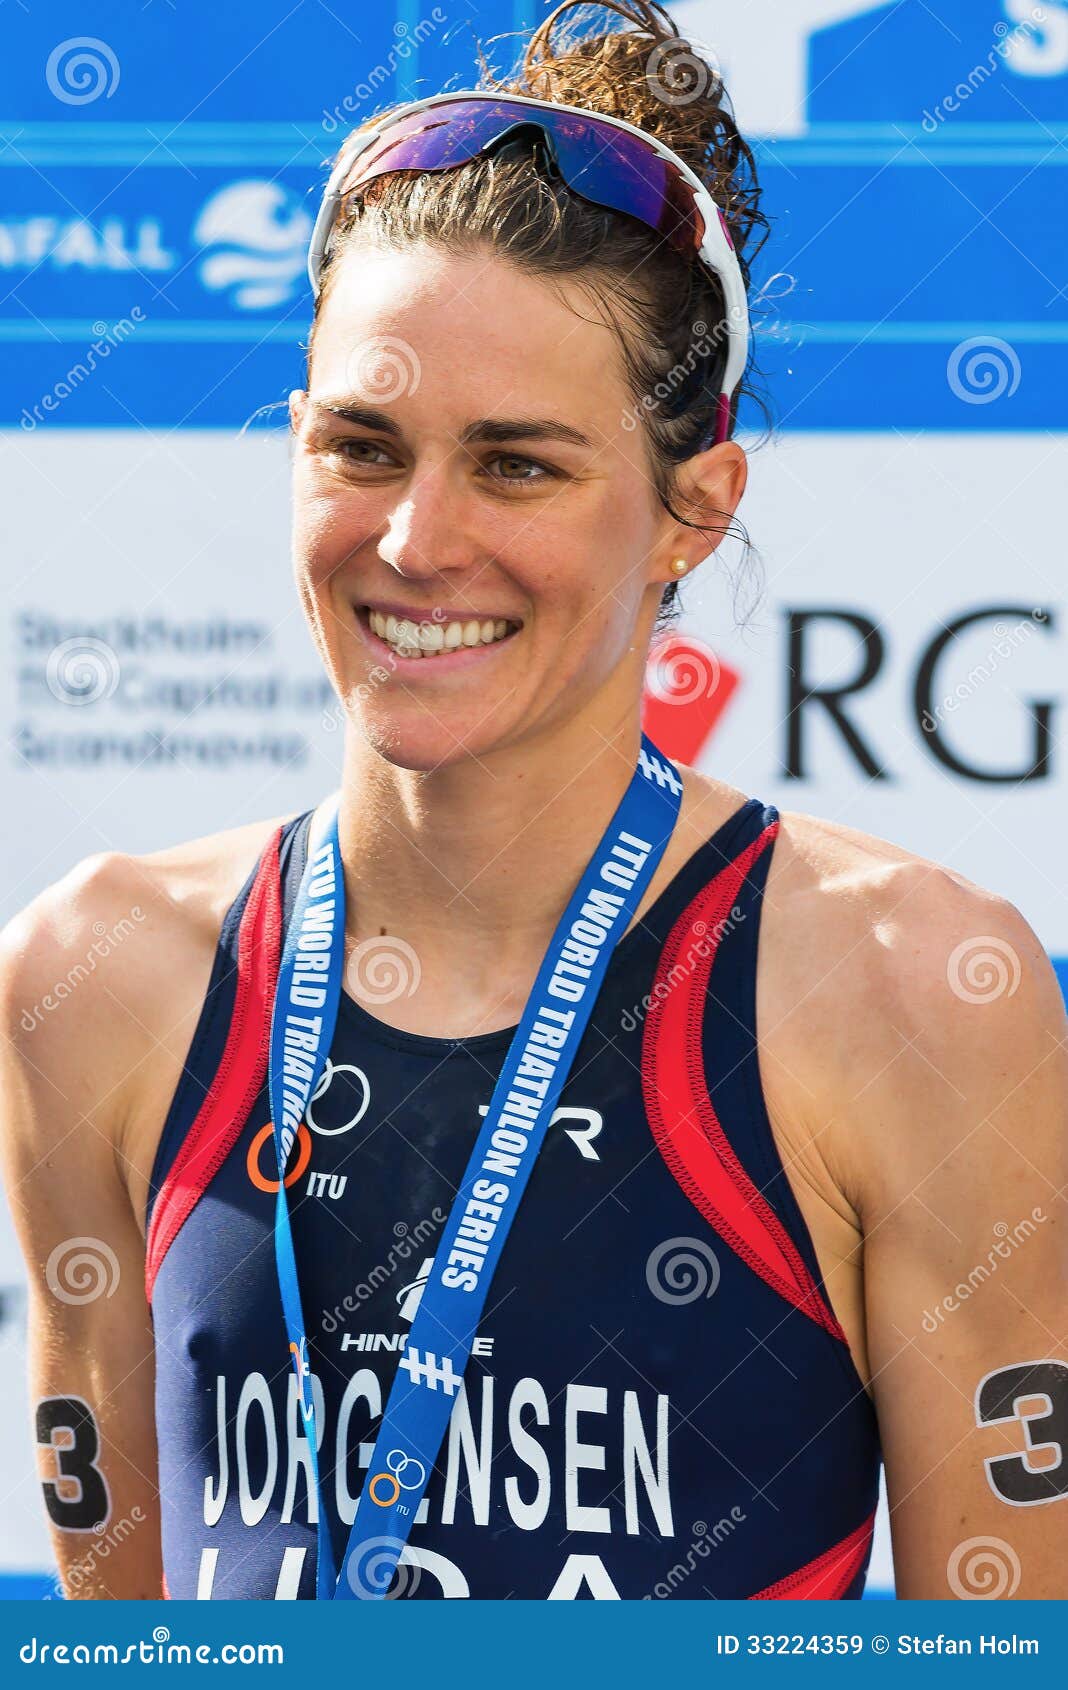 stockholm aug winner gwen jorgensen womens itu world triathlon series event sweden 33224359